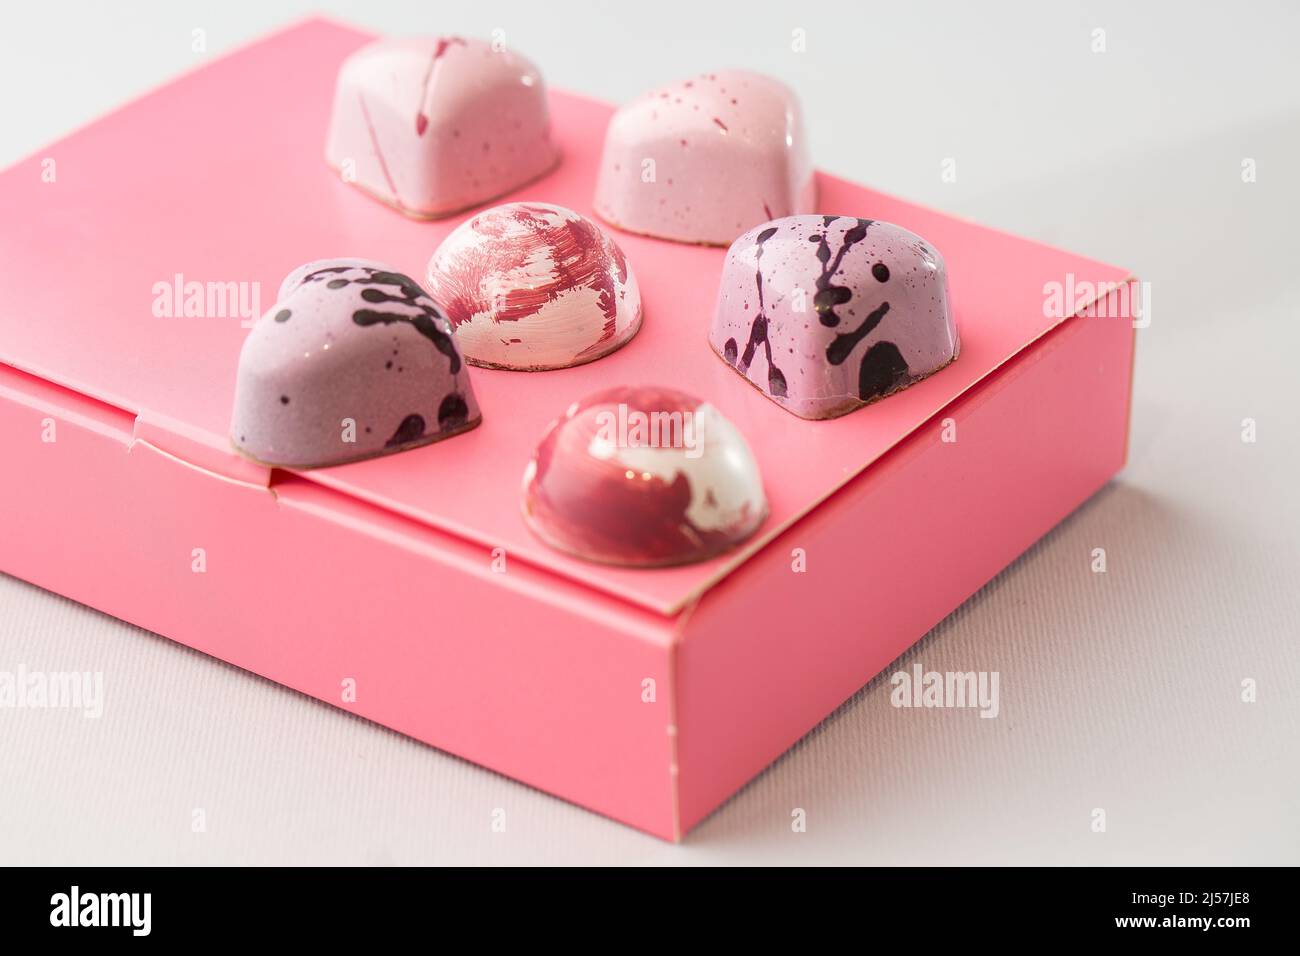 Caramelle di lusso al cioccolato fatte a mano su scatola rosa isolata su sfondo bianco. Esclusivo bonbon artigianale. Concetto di pubblicità di prodotto per pasticceria. Foto Stock